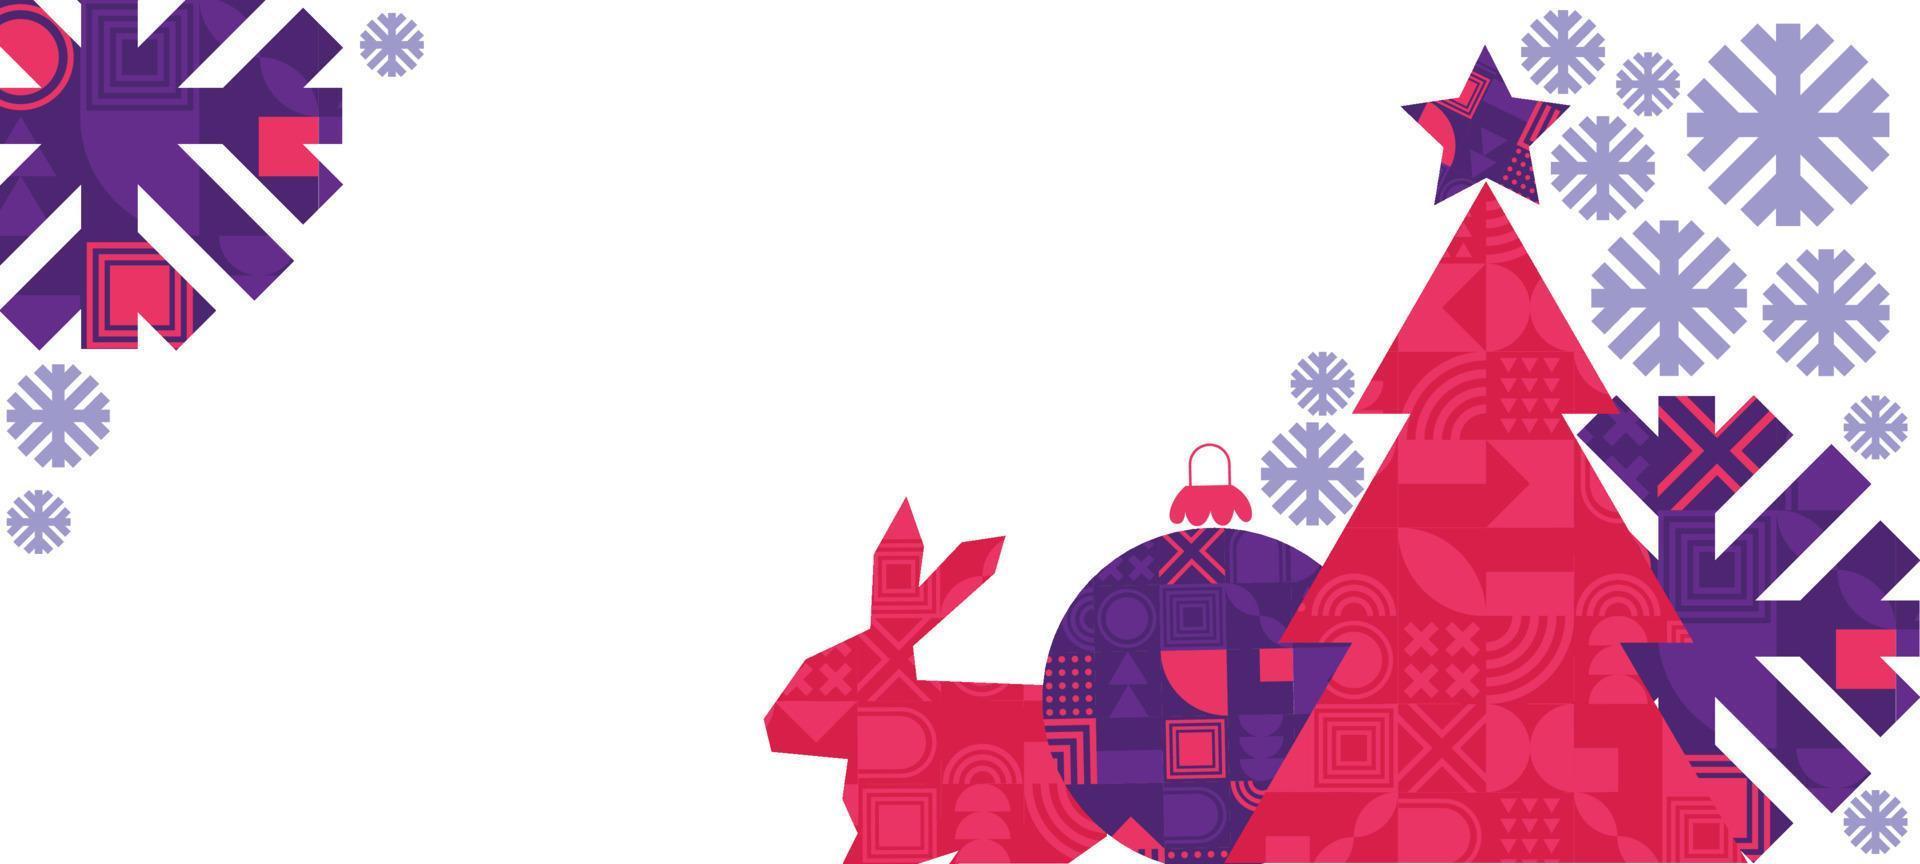 glad jul och Lycklig ny år baner. trendig modern xmas design med abstrakt geometrisk element, jul träd, snöflinga, kanin, kanin. horisontell affisch, hälsning kort, försäljning baner hemsida vektor